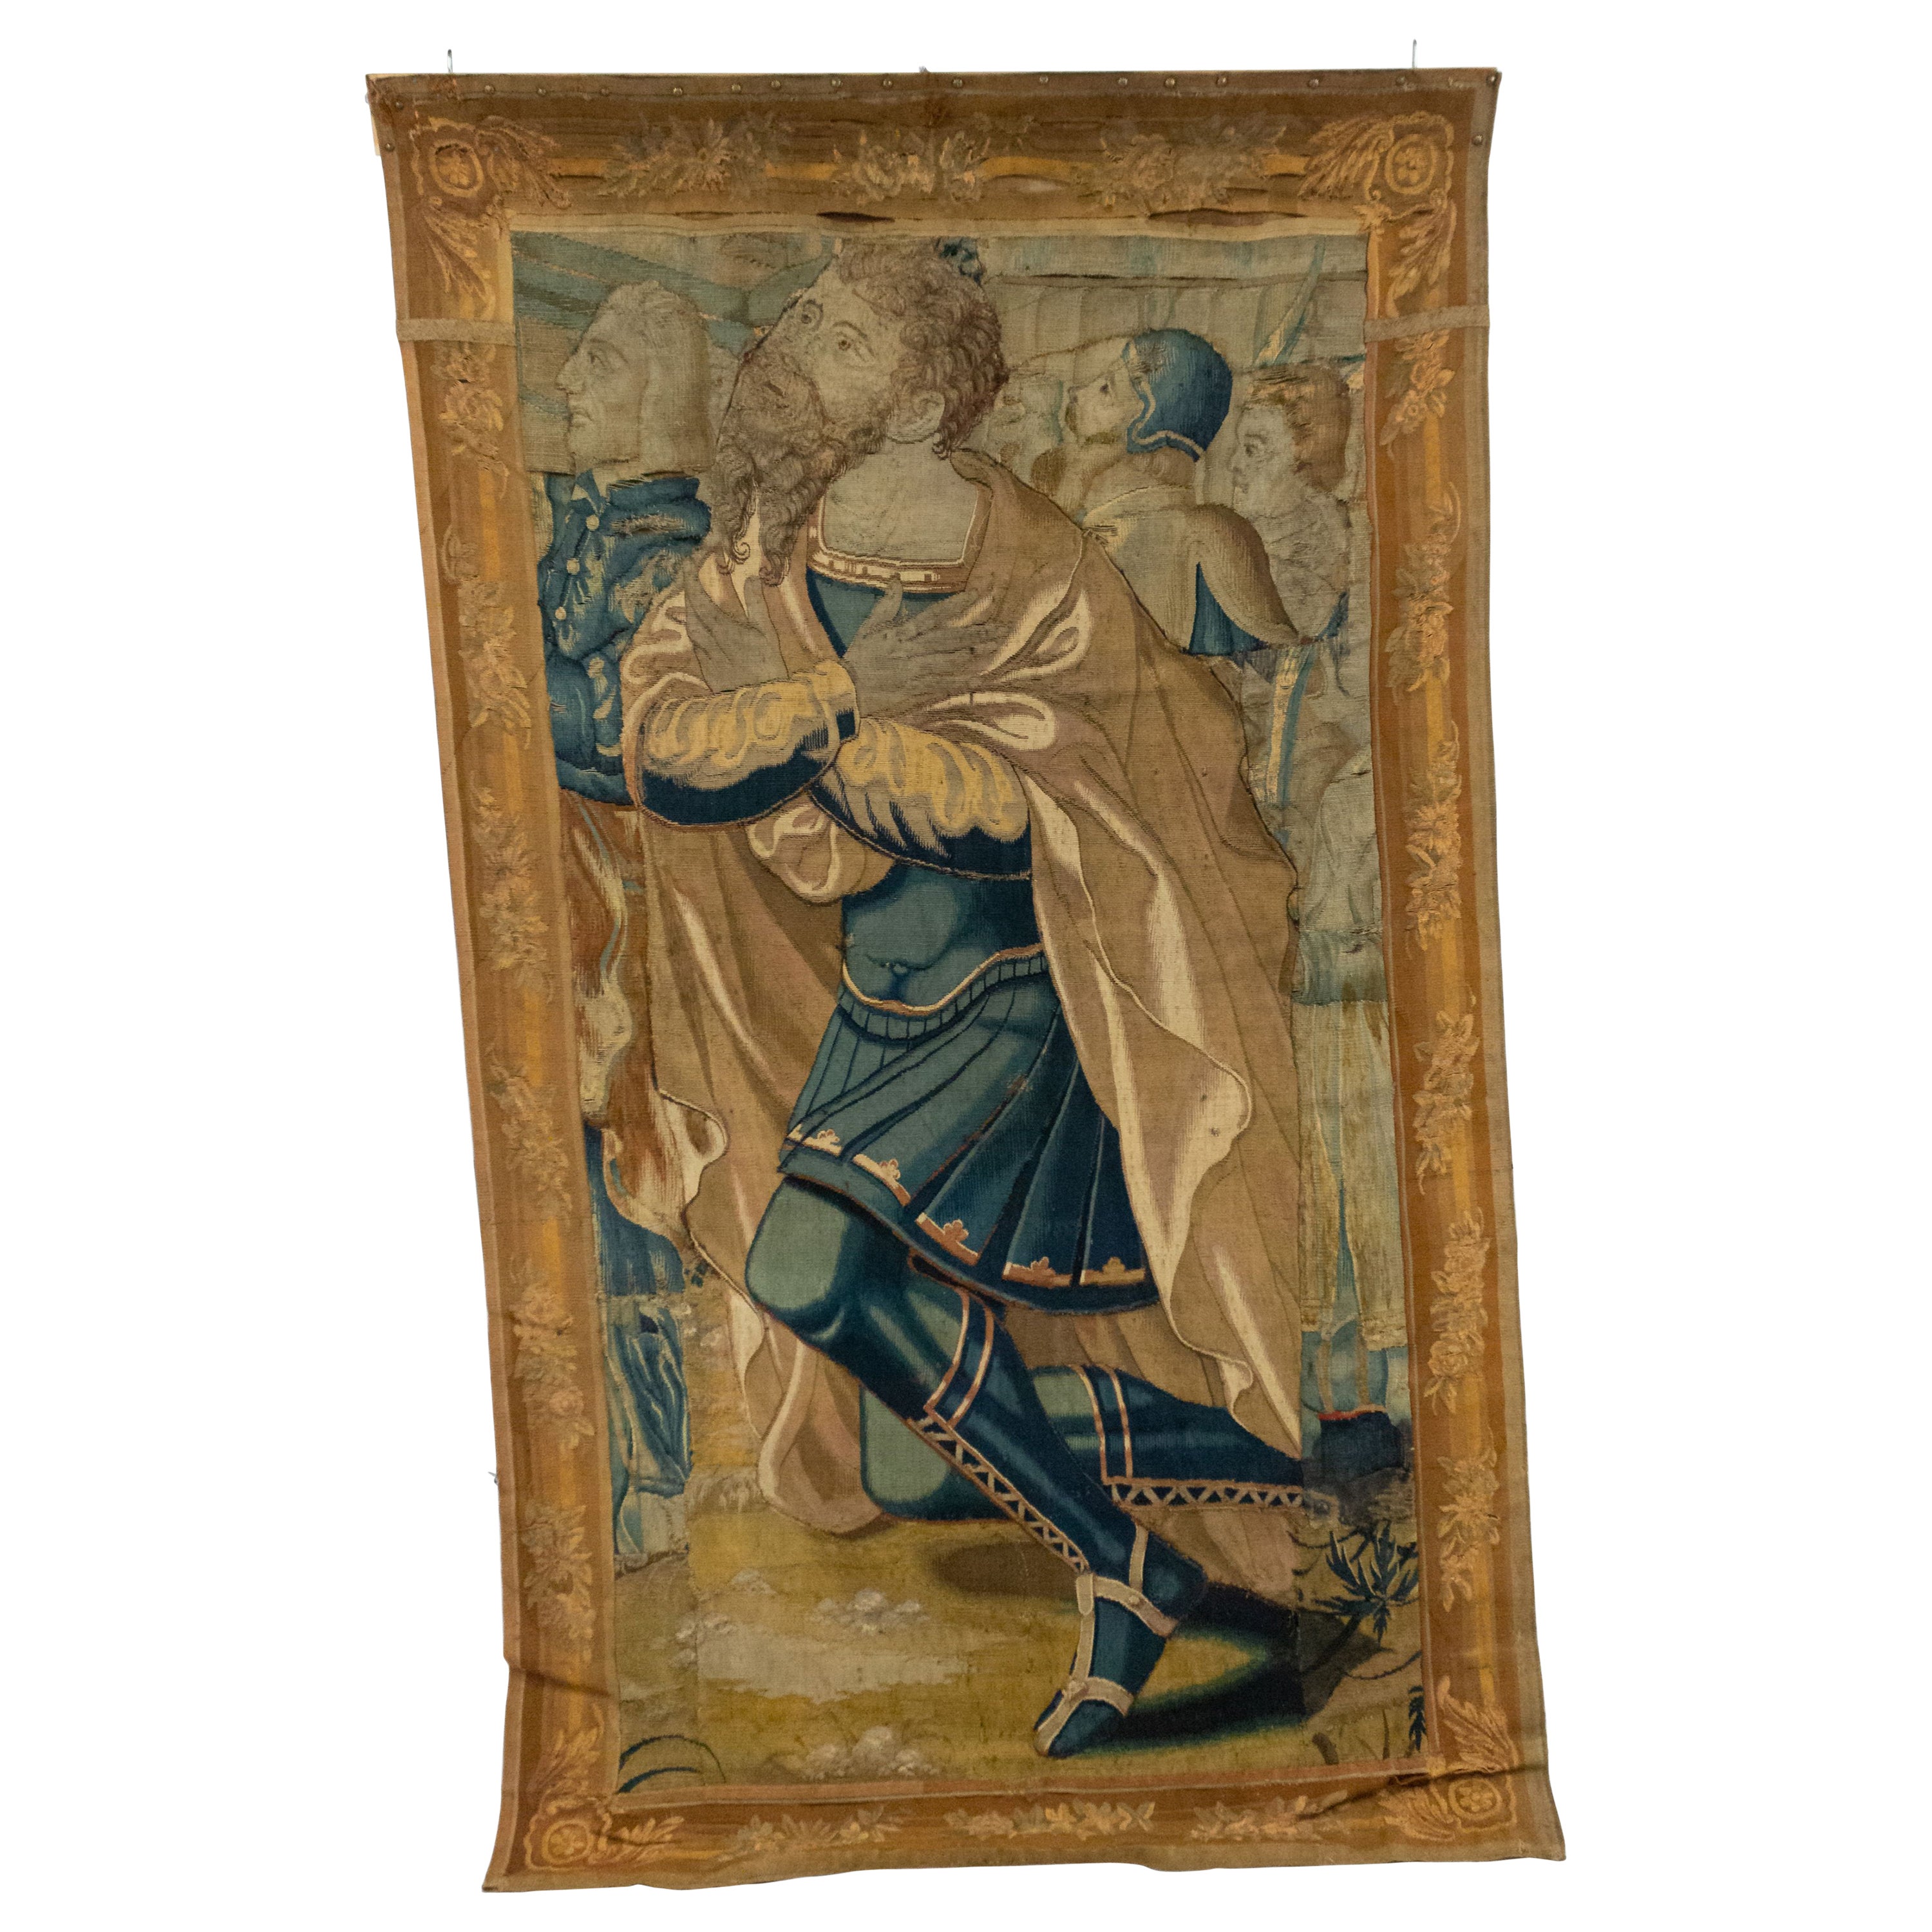 Gewebter Wandteppich eines knienden Mannes aus Belgien, 17. Jahrhundert